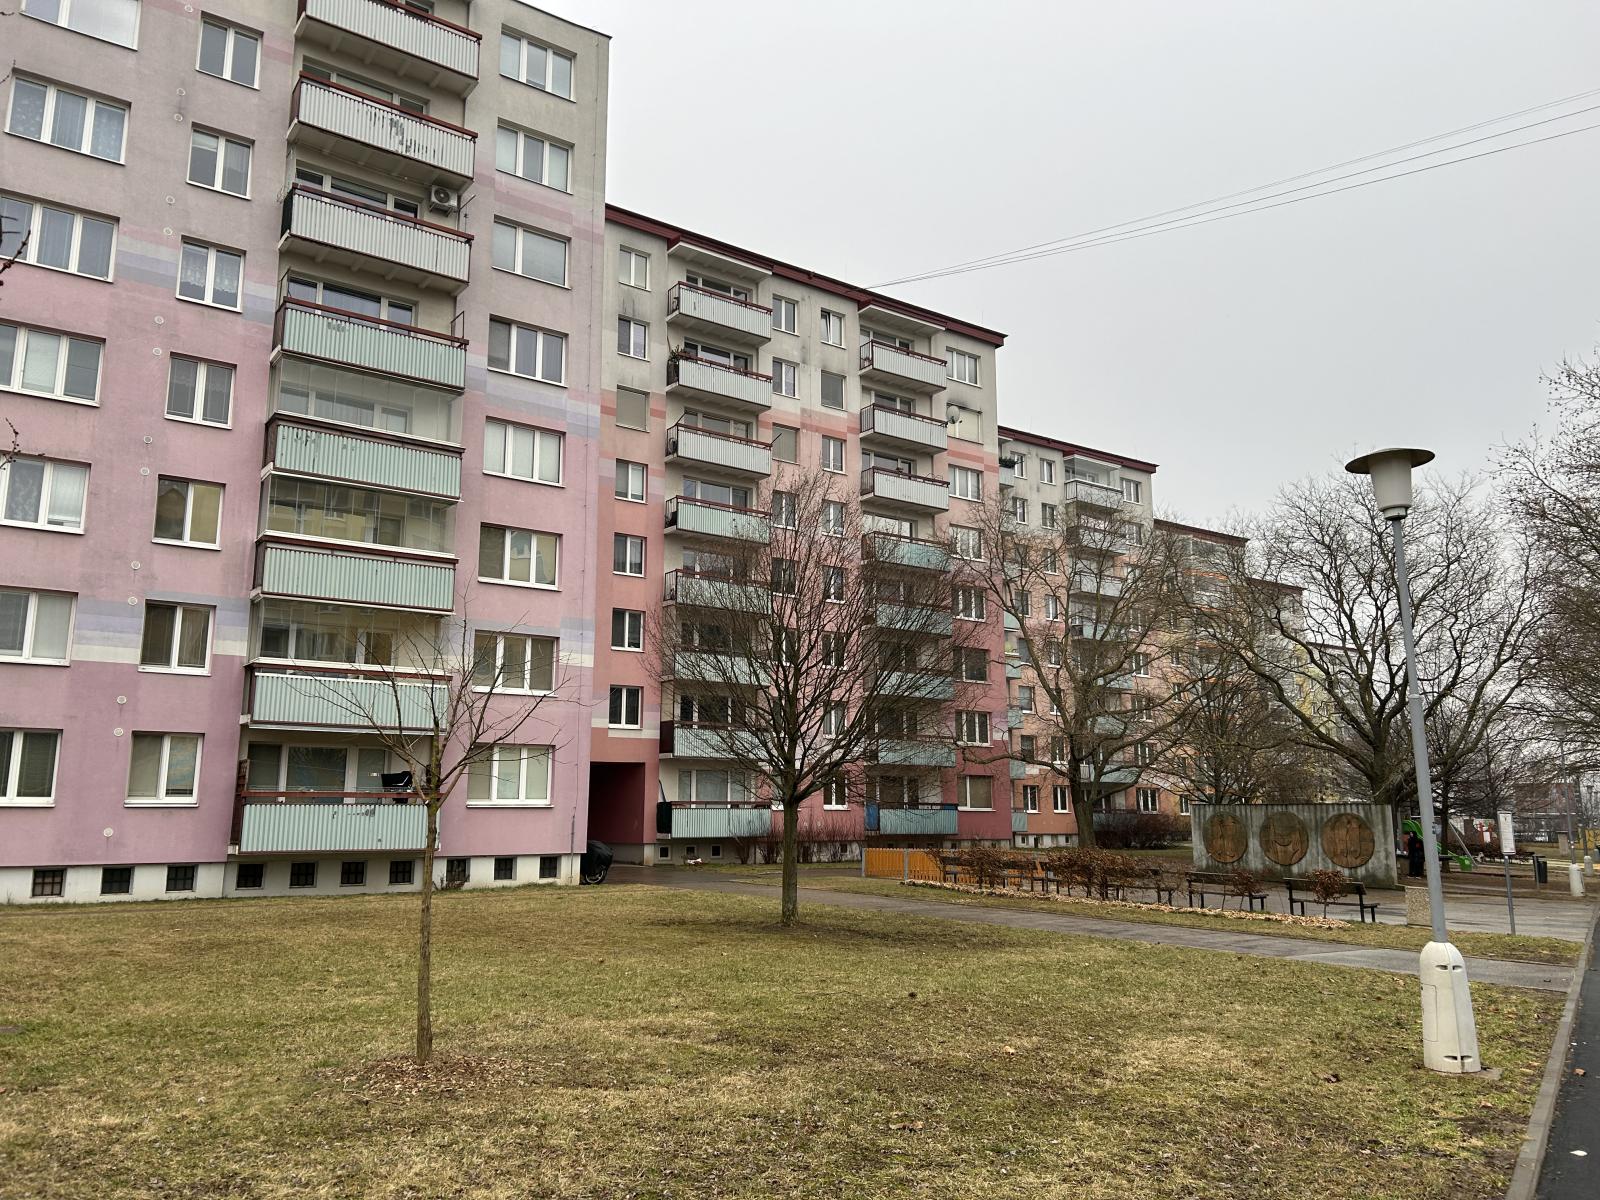 Nabízíme k prodeji byt 1+1 v panelovém bytovém domě na ulici Strnadova, Brno Líšeň